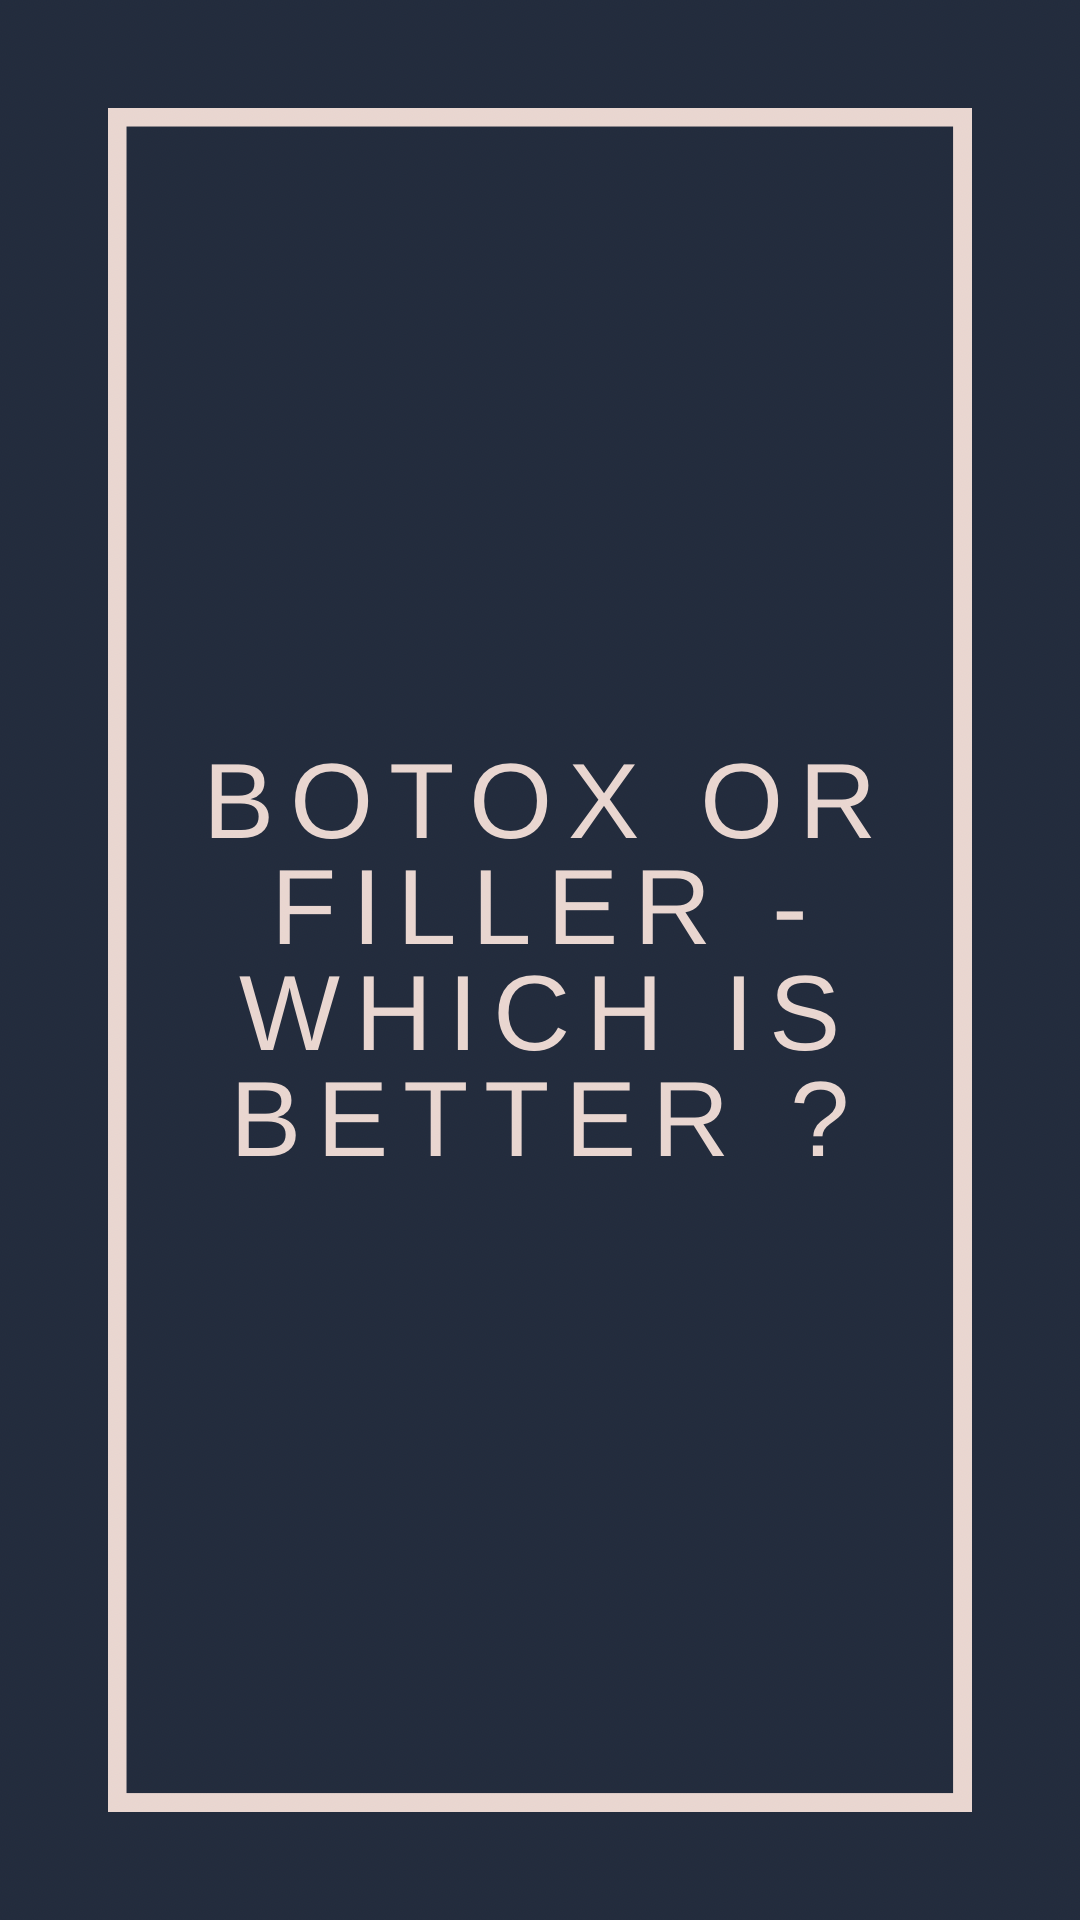 Botox or filler